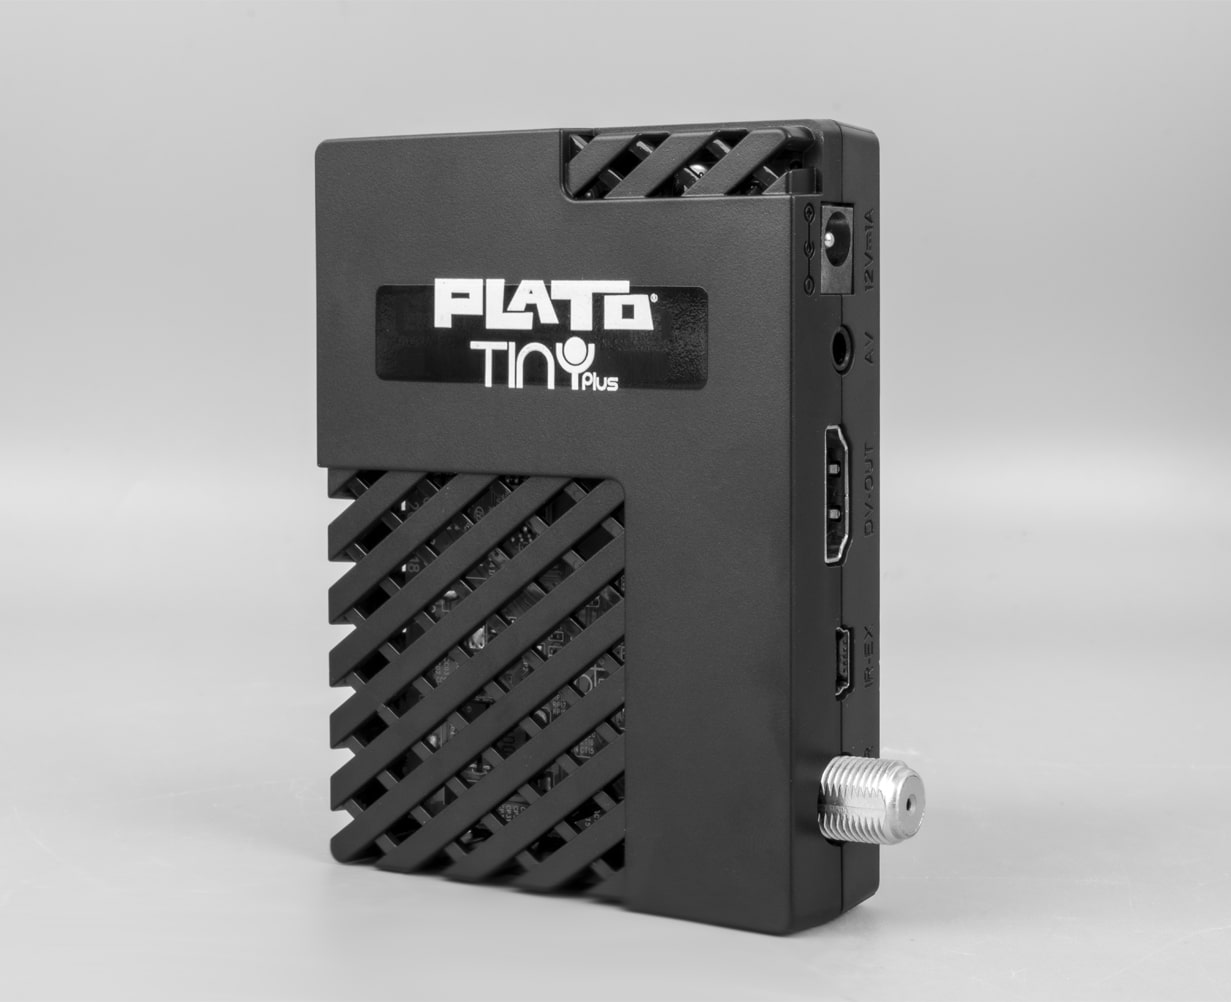 Plato Tiny Plus Uydu Alıcısı Genel Bakış